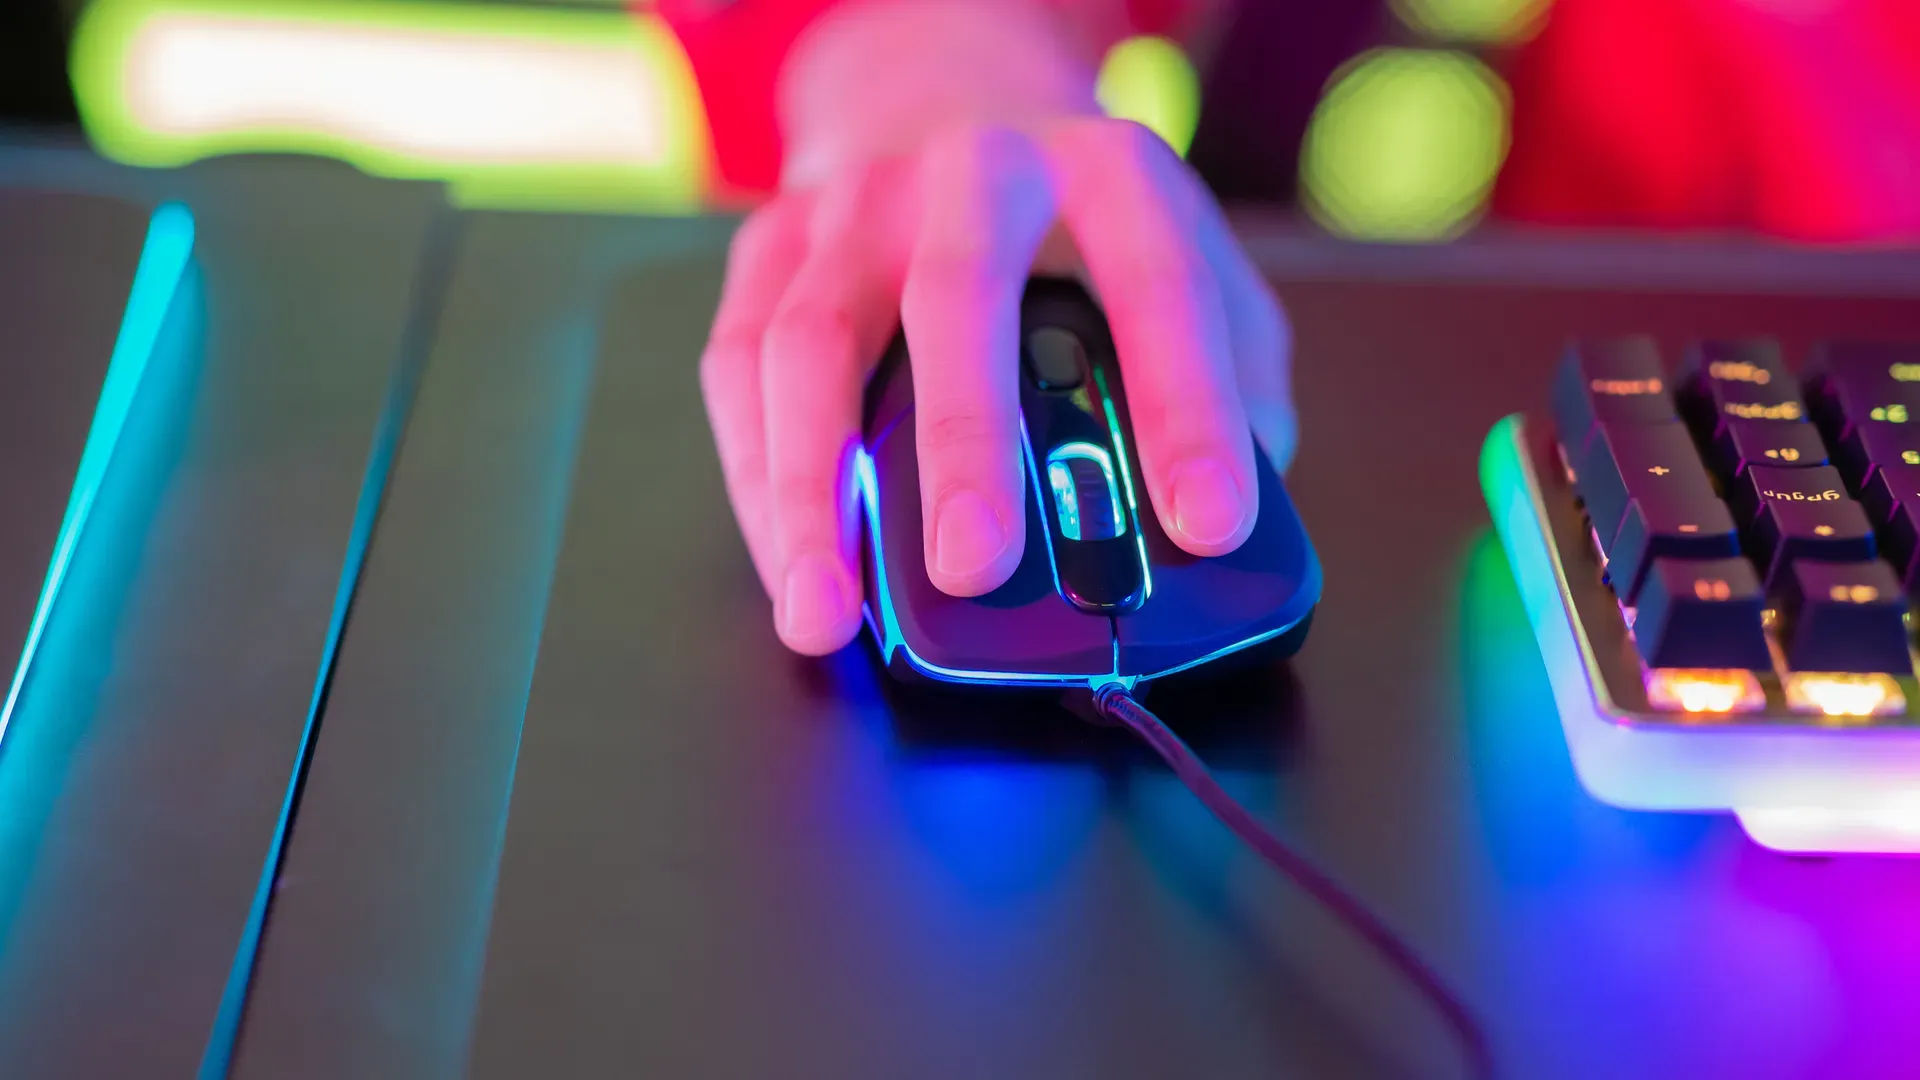 Uma mão segura um mouse gamer enquanto joga. O fundo é meio borrado e muito colorido.